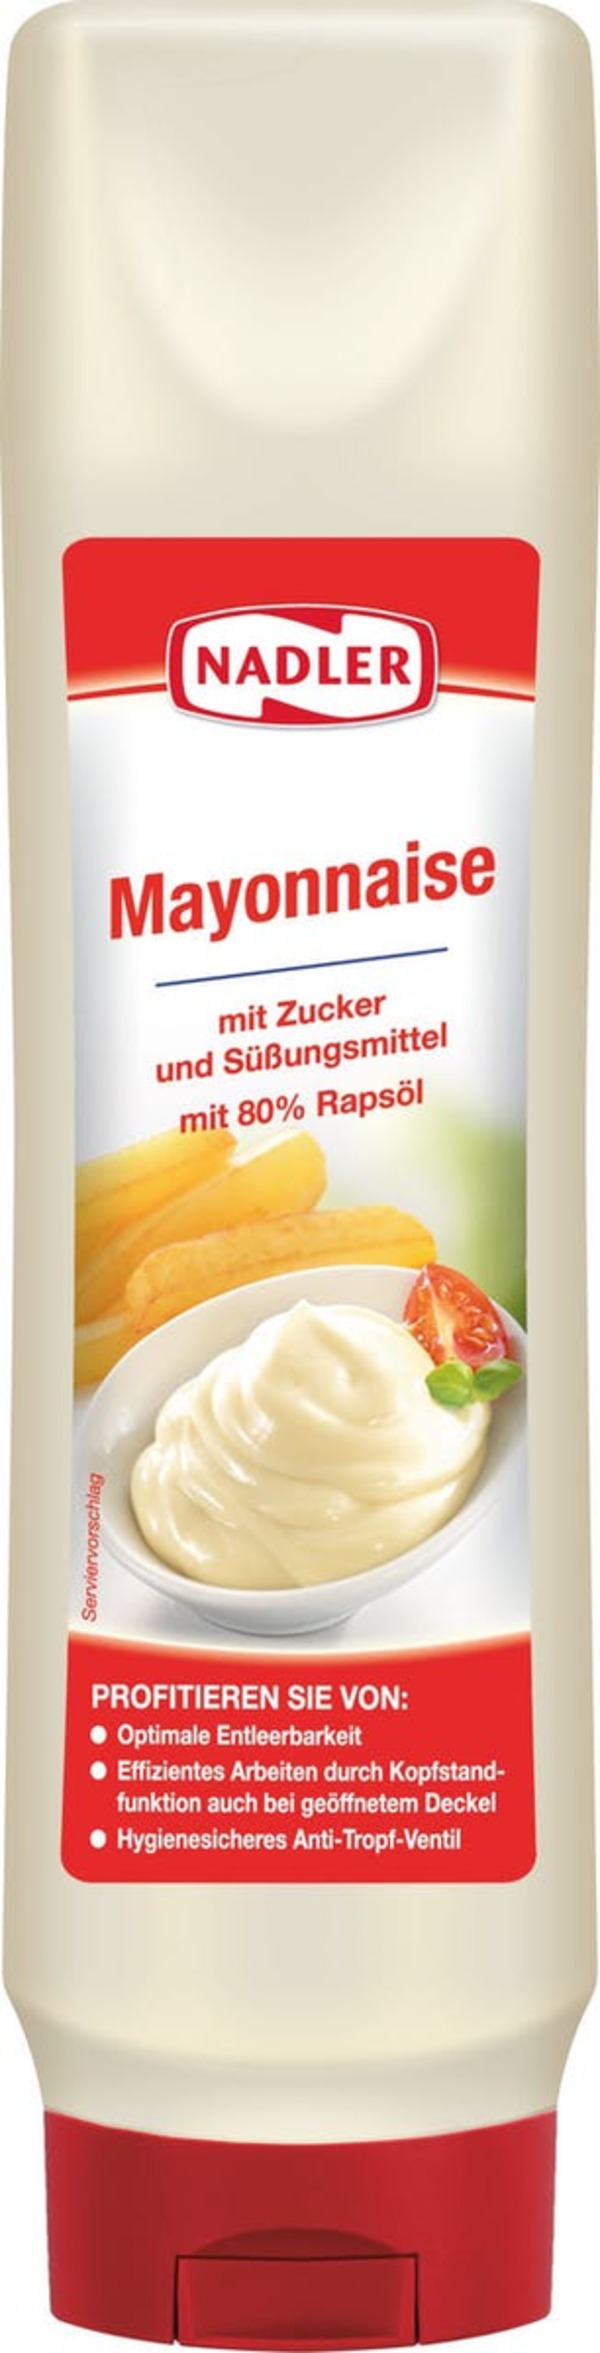 Bild 1 von Nadler Mayonnaise (831 g)